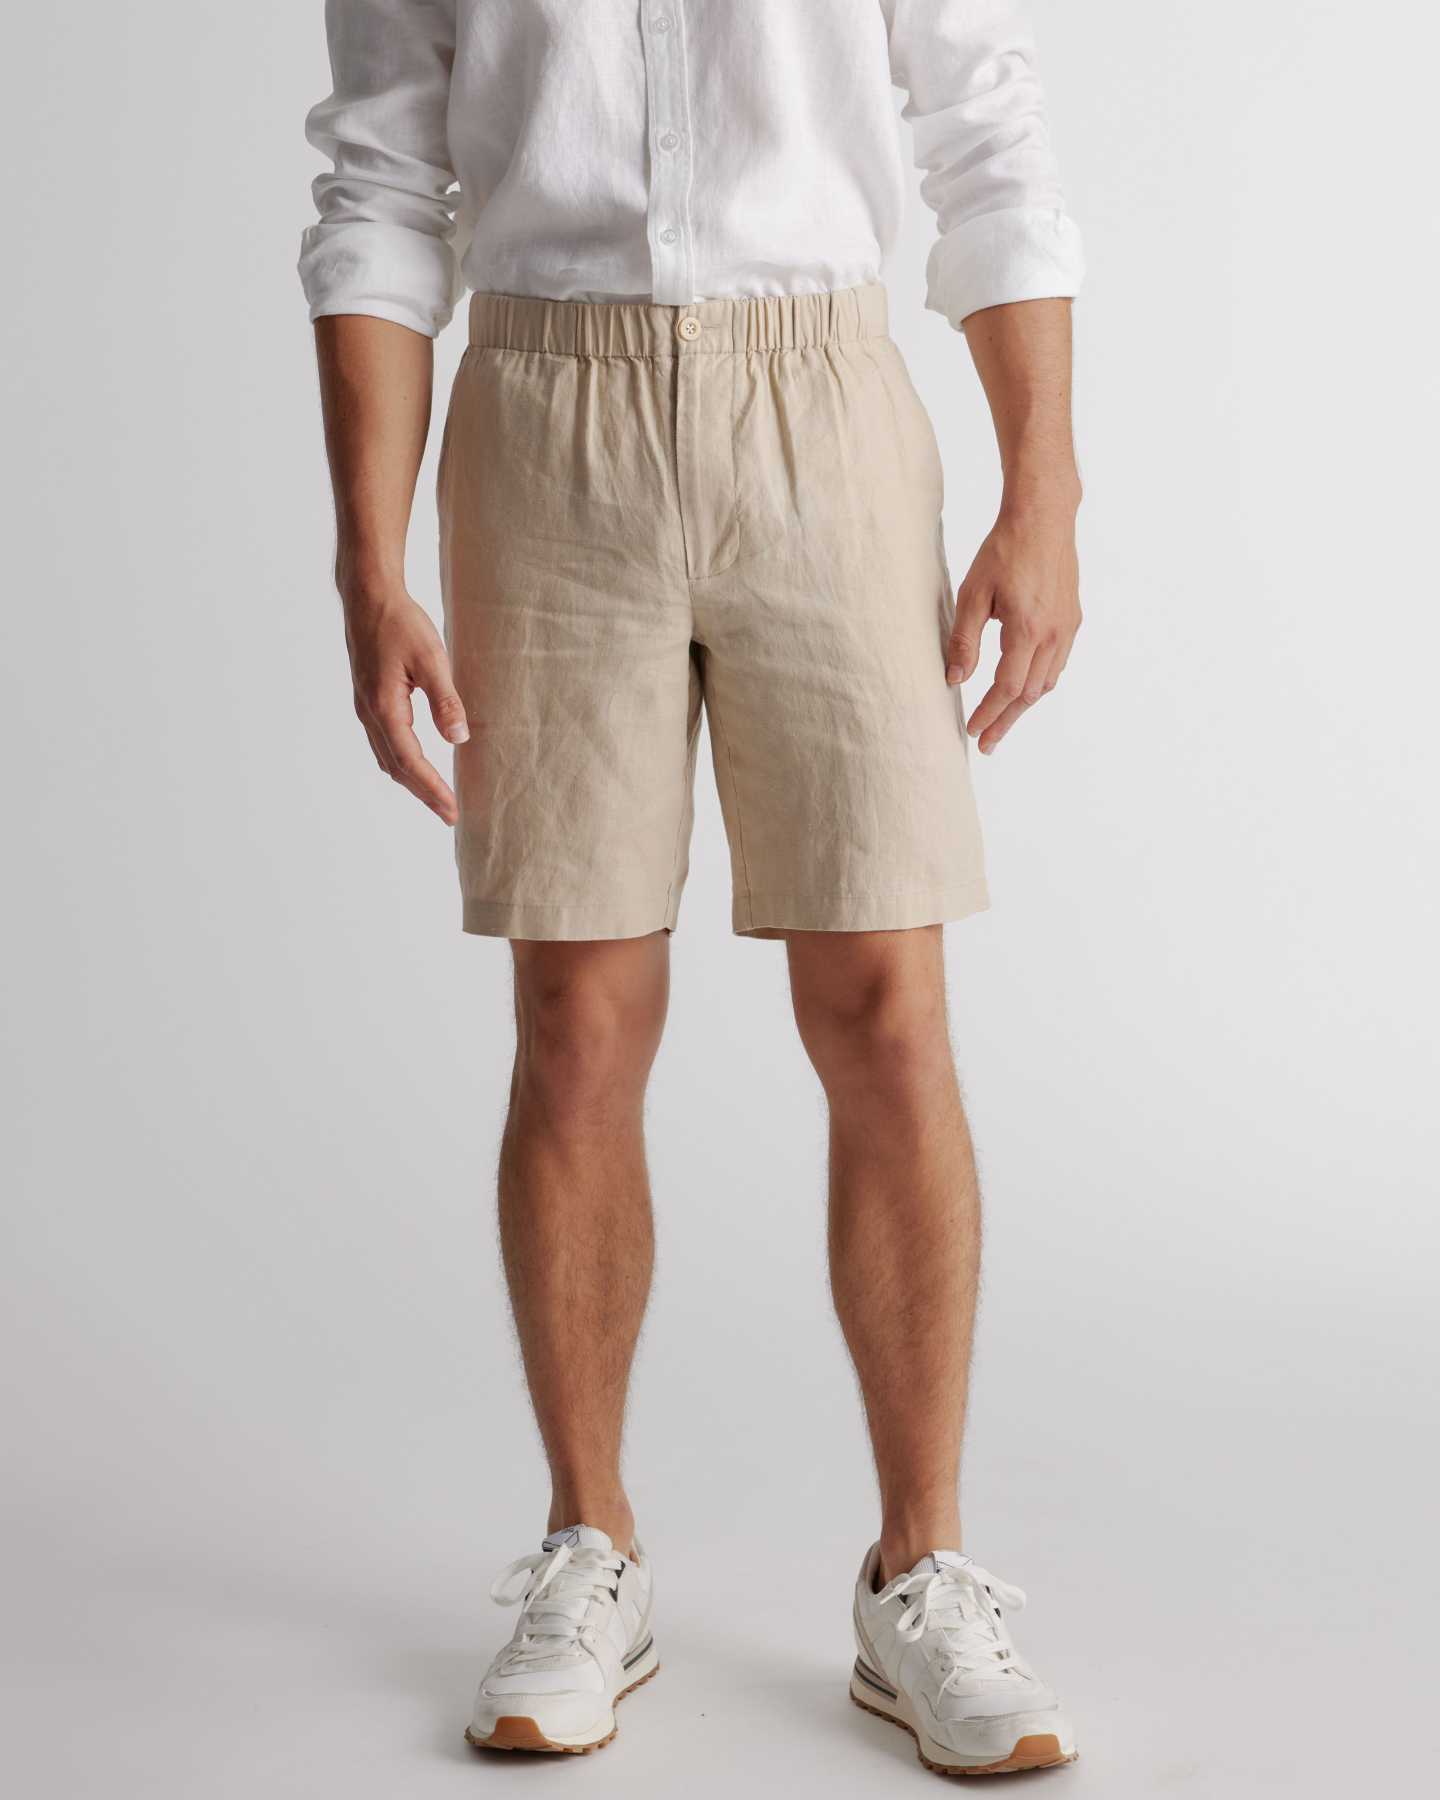 100% European Linen Shorts - Driftwood